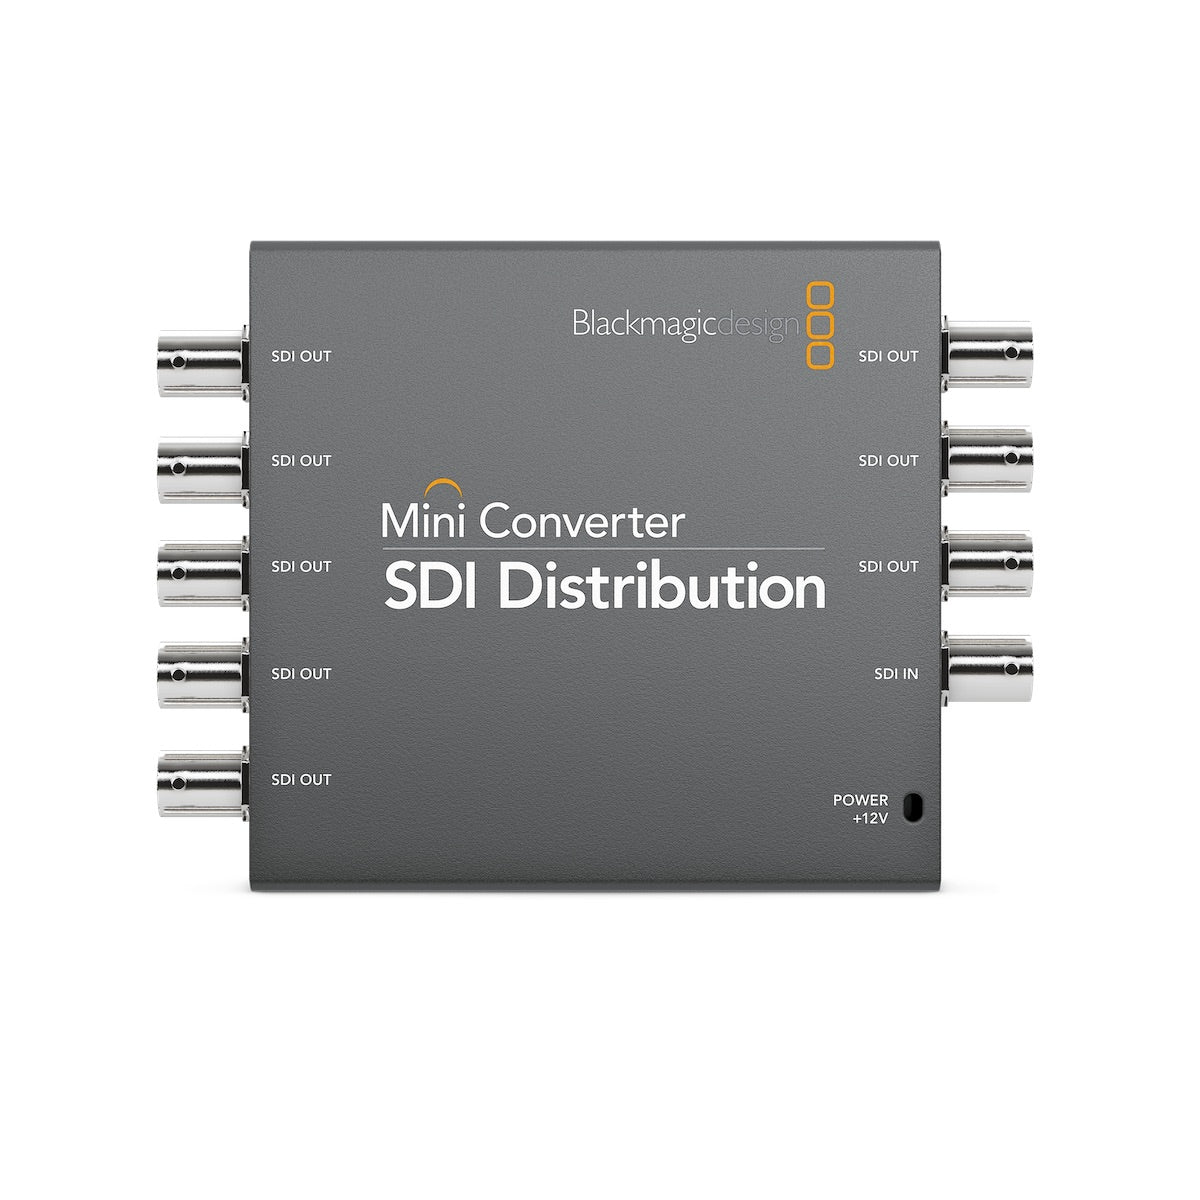 Blackmagic Mini Converter SDI Distribution, front